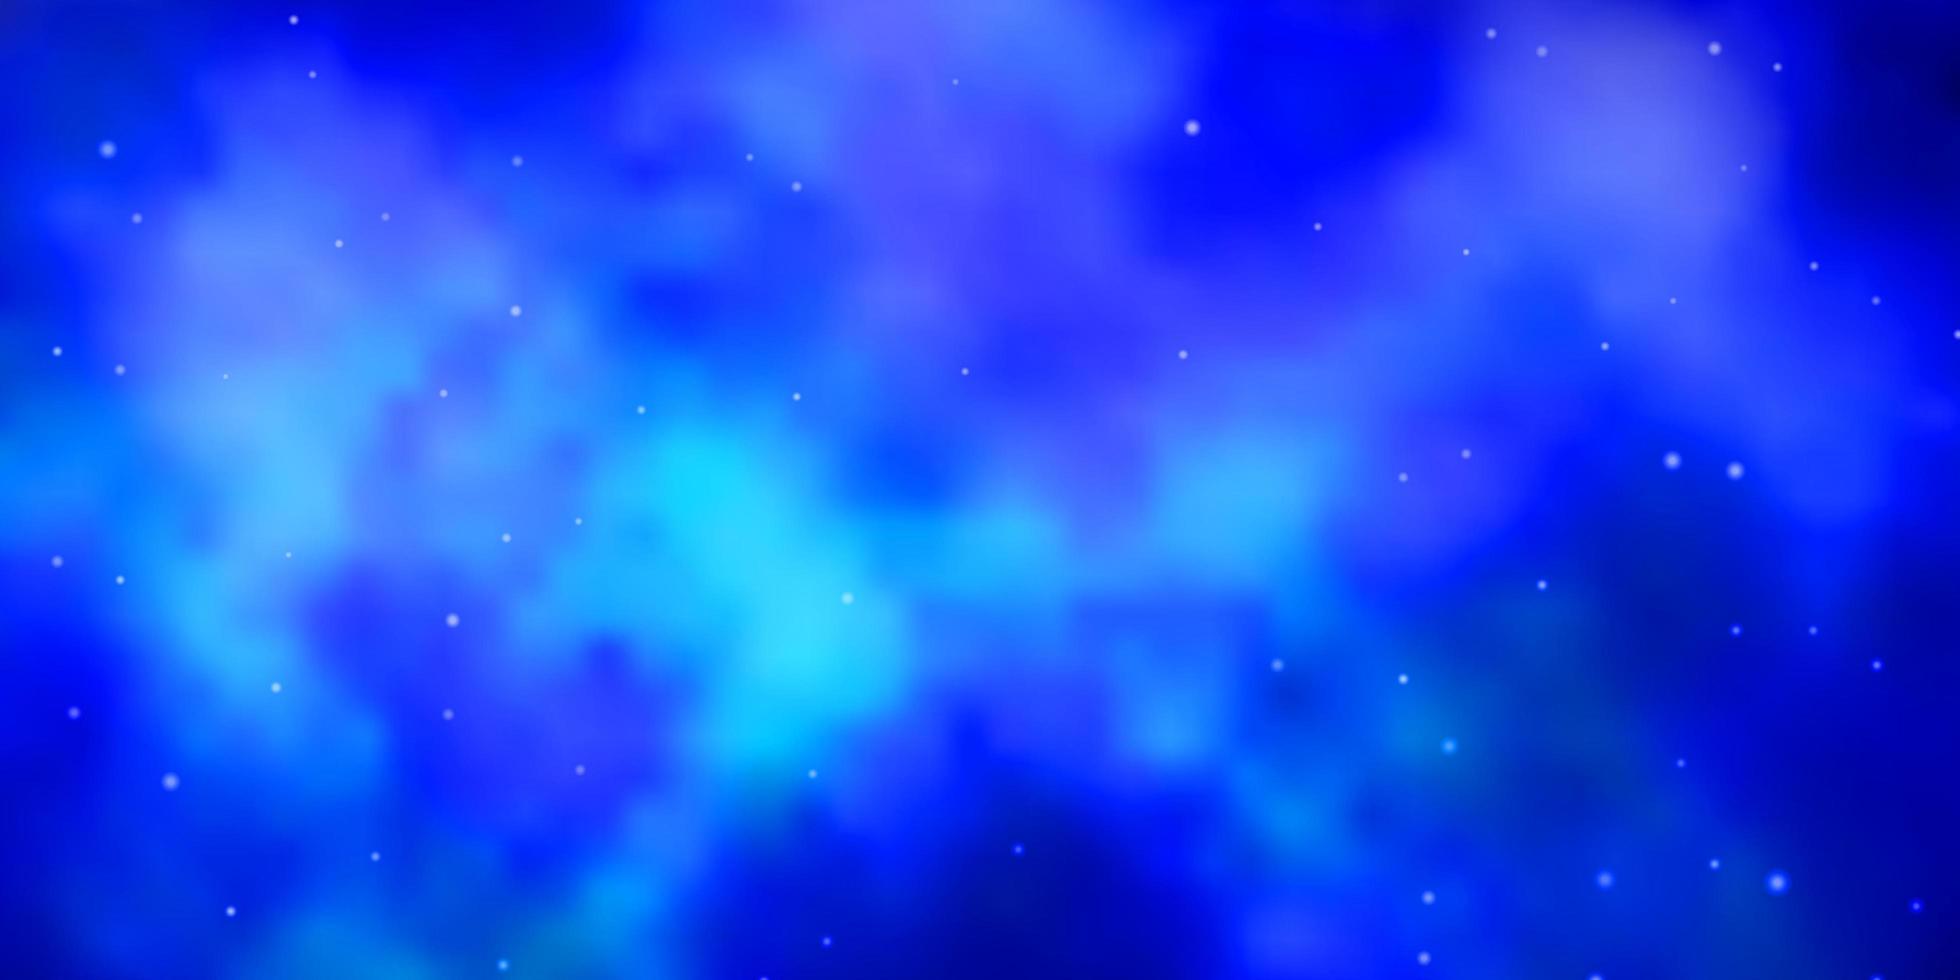 mörkblå vektormall med neonstjärnor. lysande färgglad illustration med små och stora stjärnor. mönster för inslagning av presenter. vektor